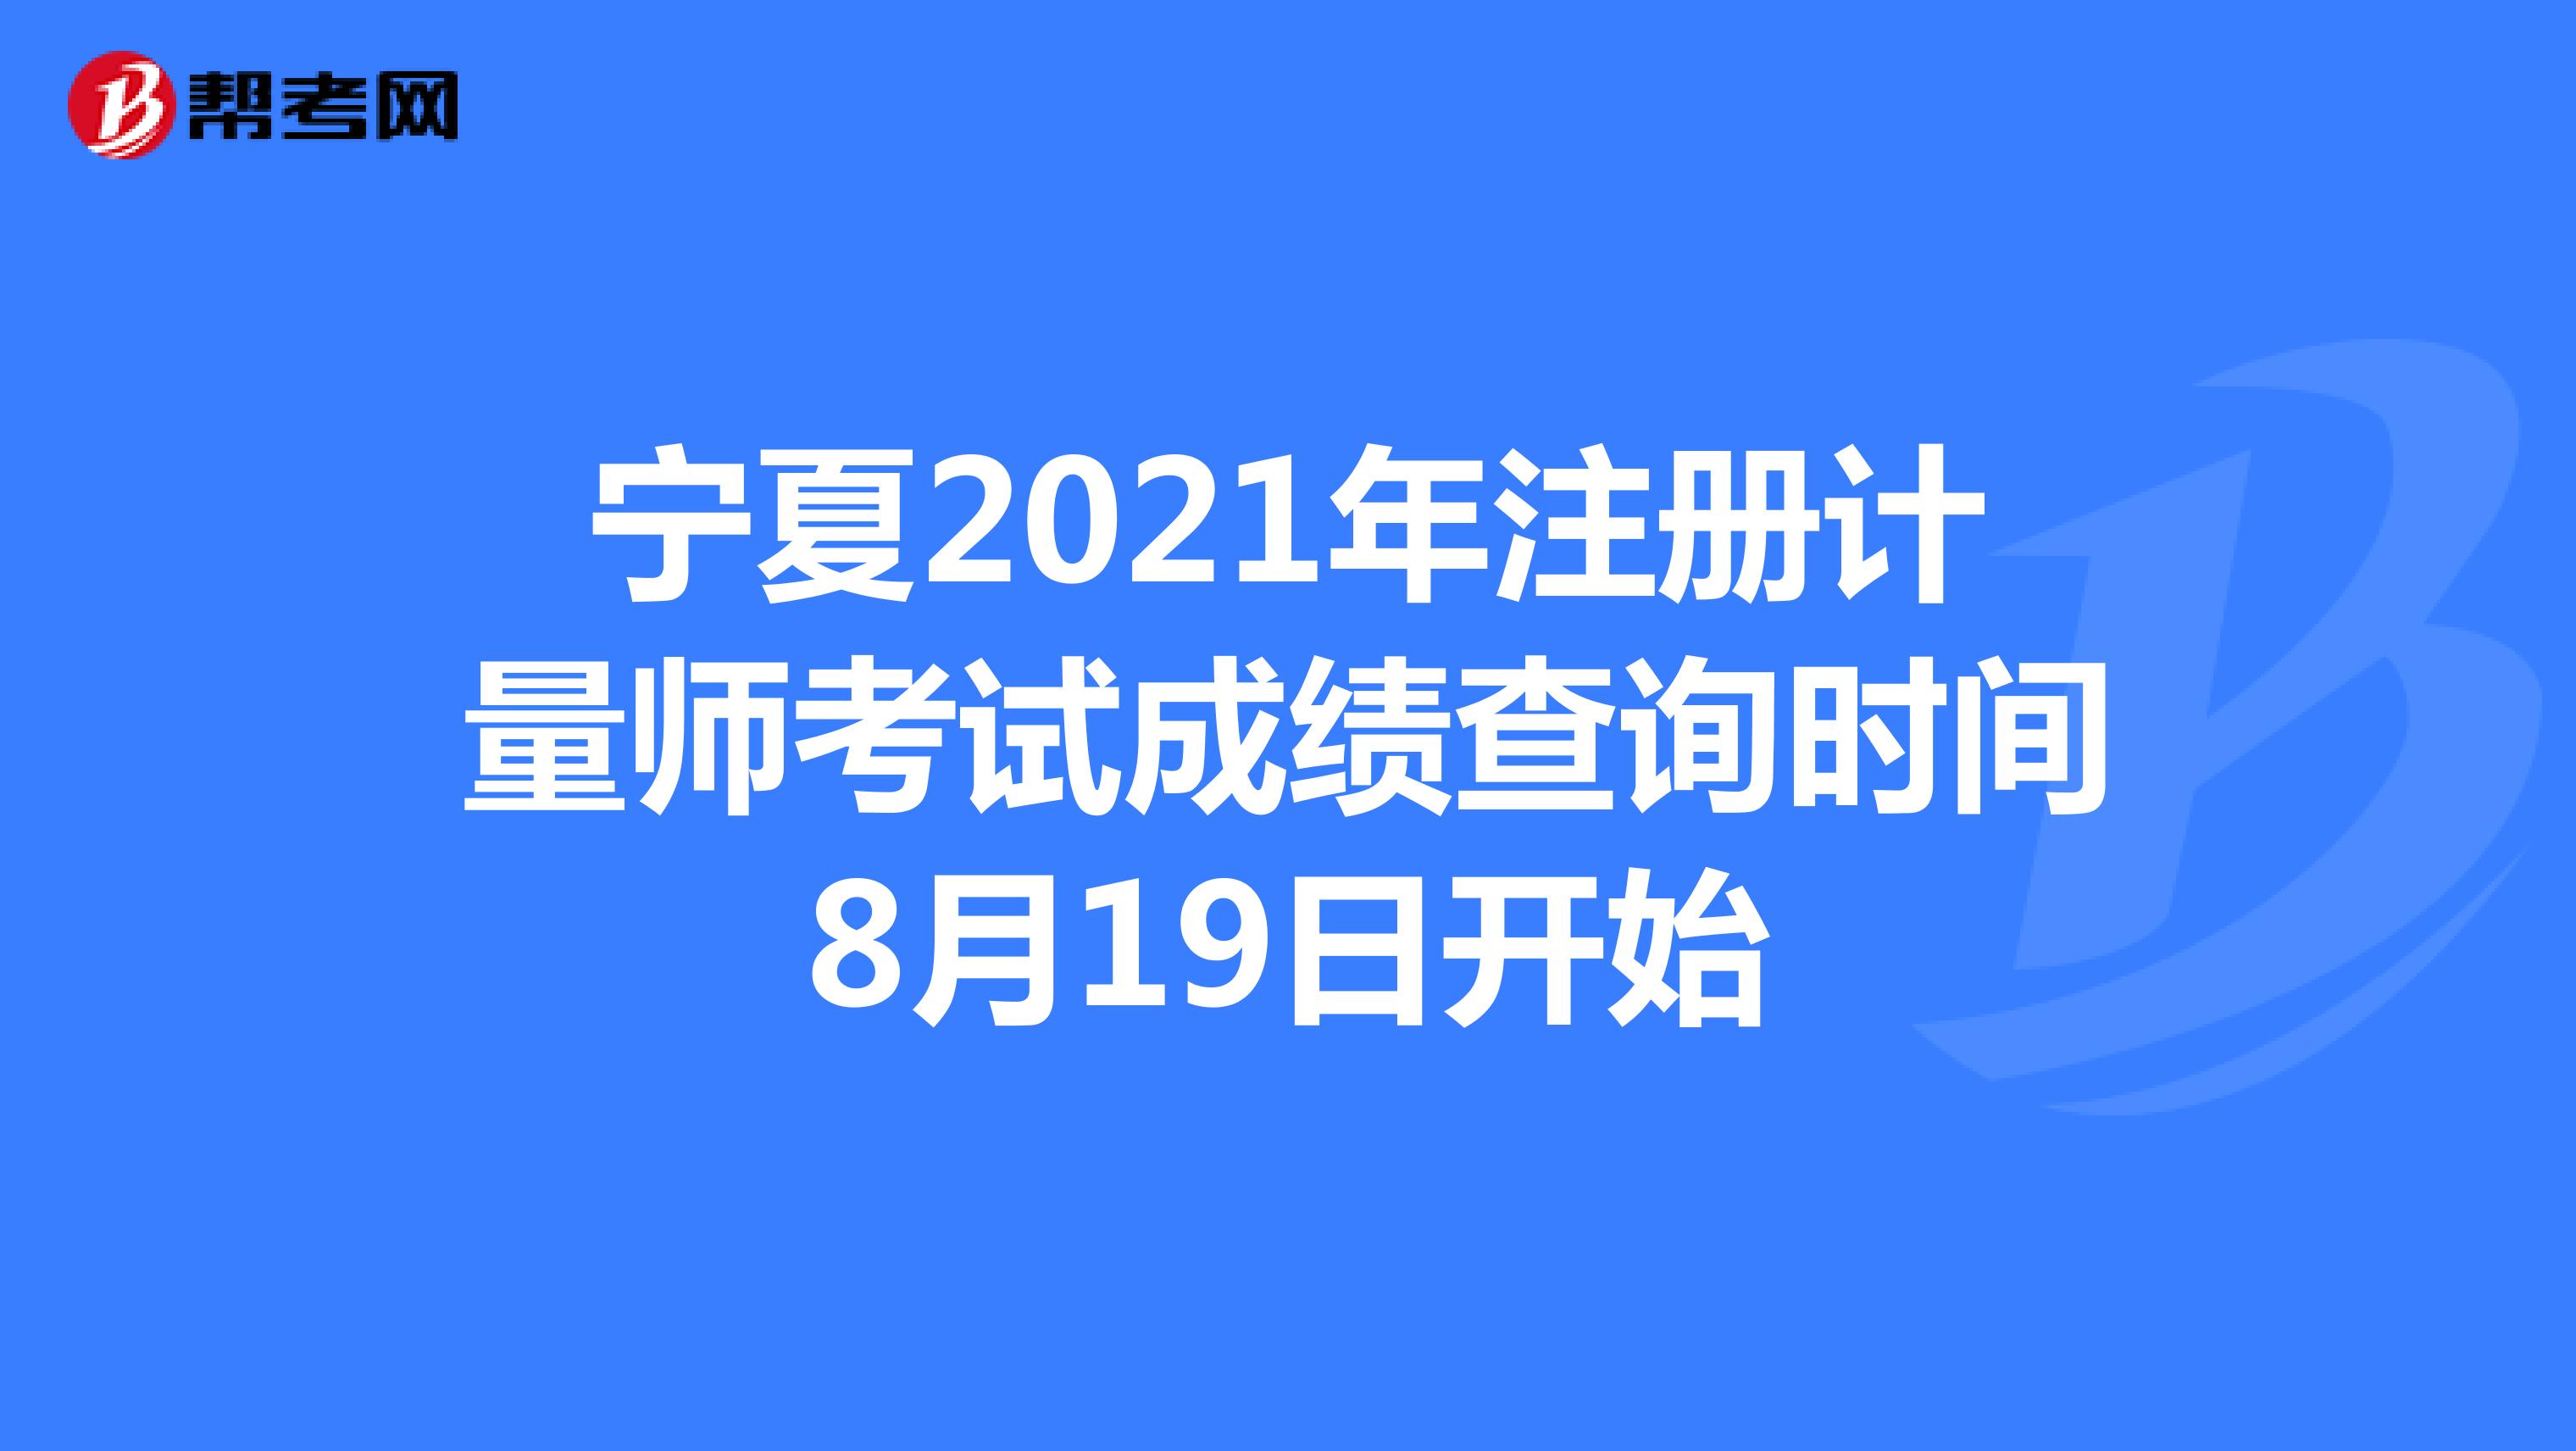 宁夏2021年注册计量师考试成绩查询时间8月19日开始